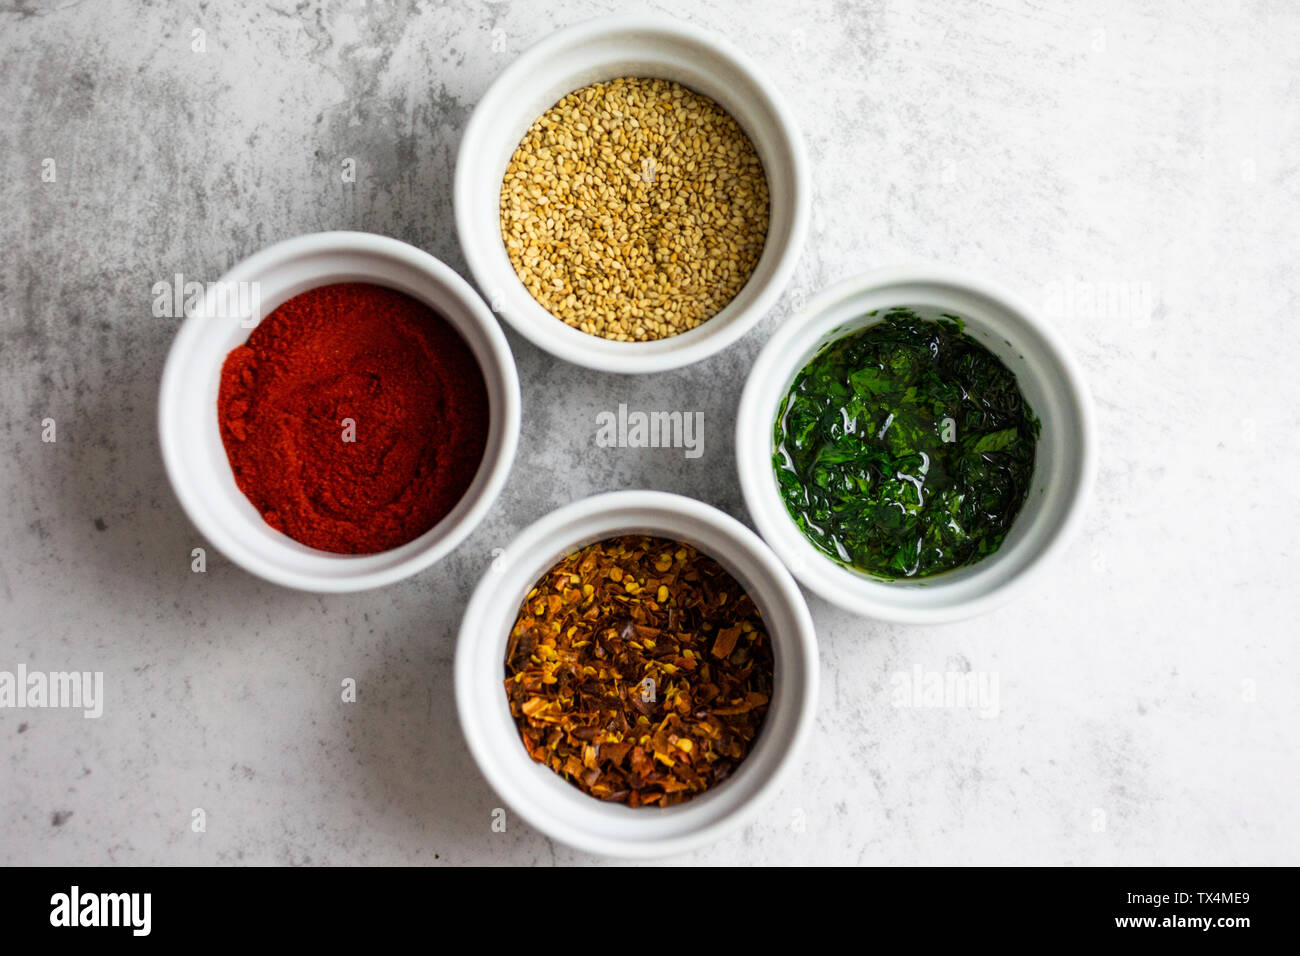 Paprika en poudre, piment, sésame et le persil avec l'huile dans des bols Banque D'Images